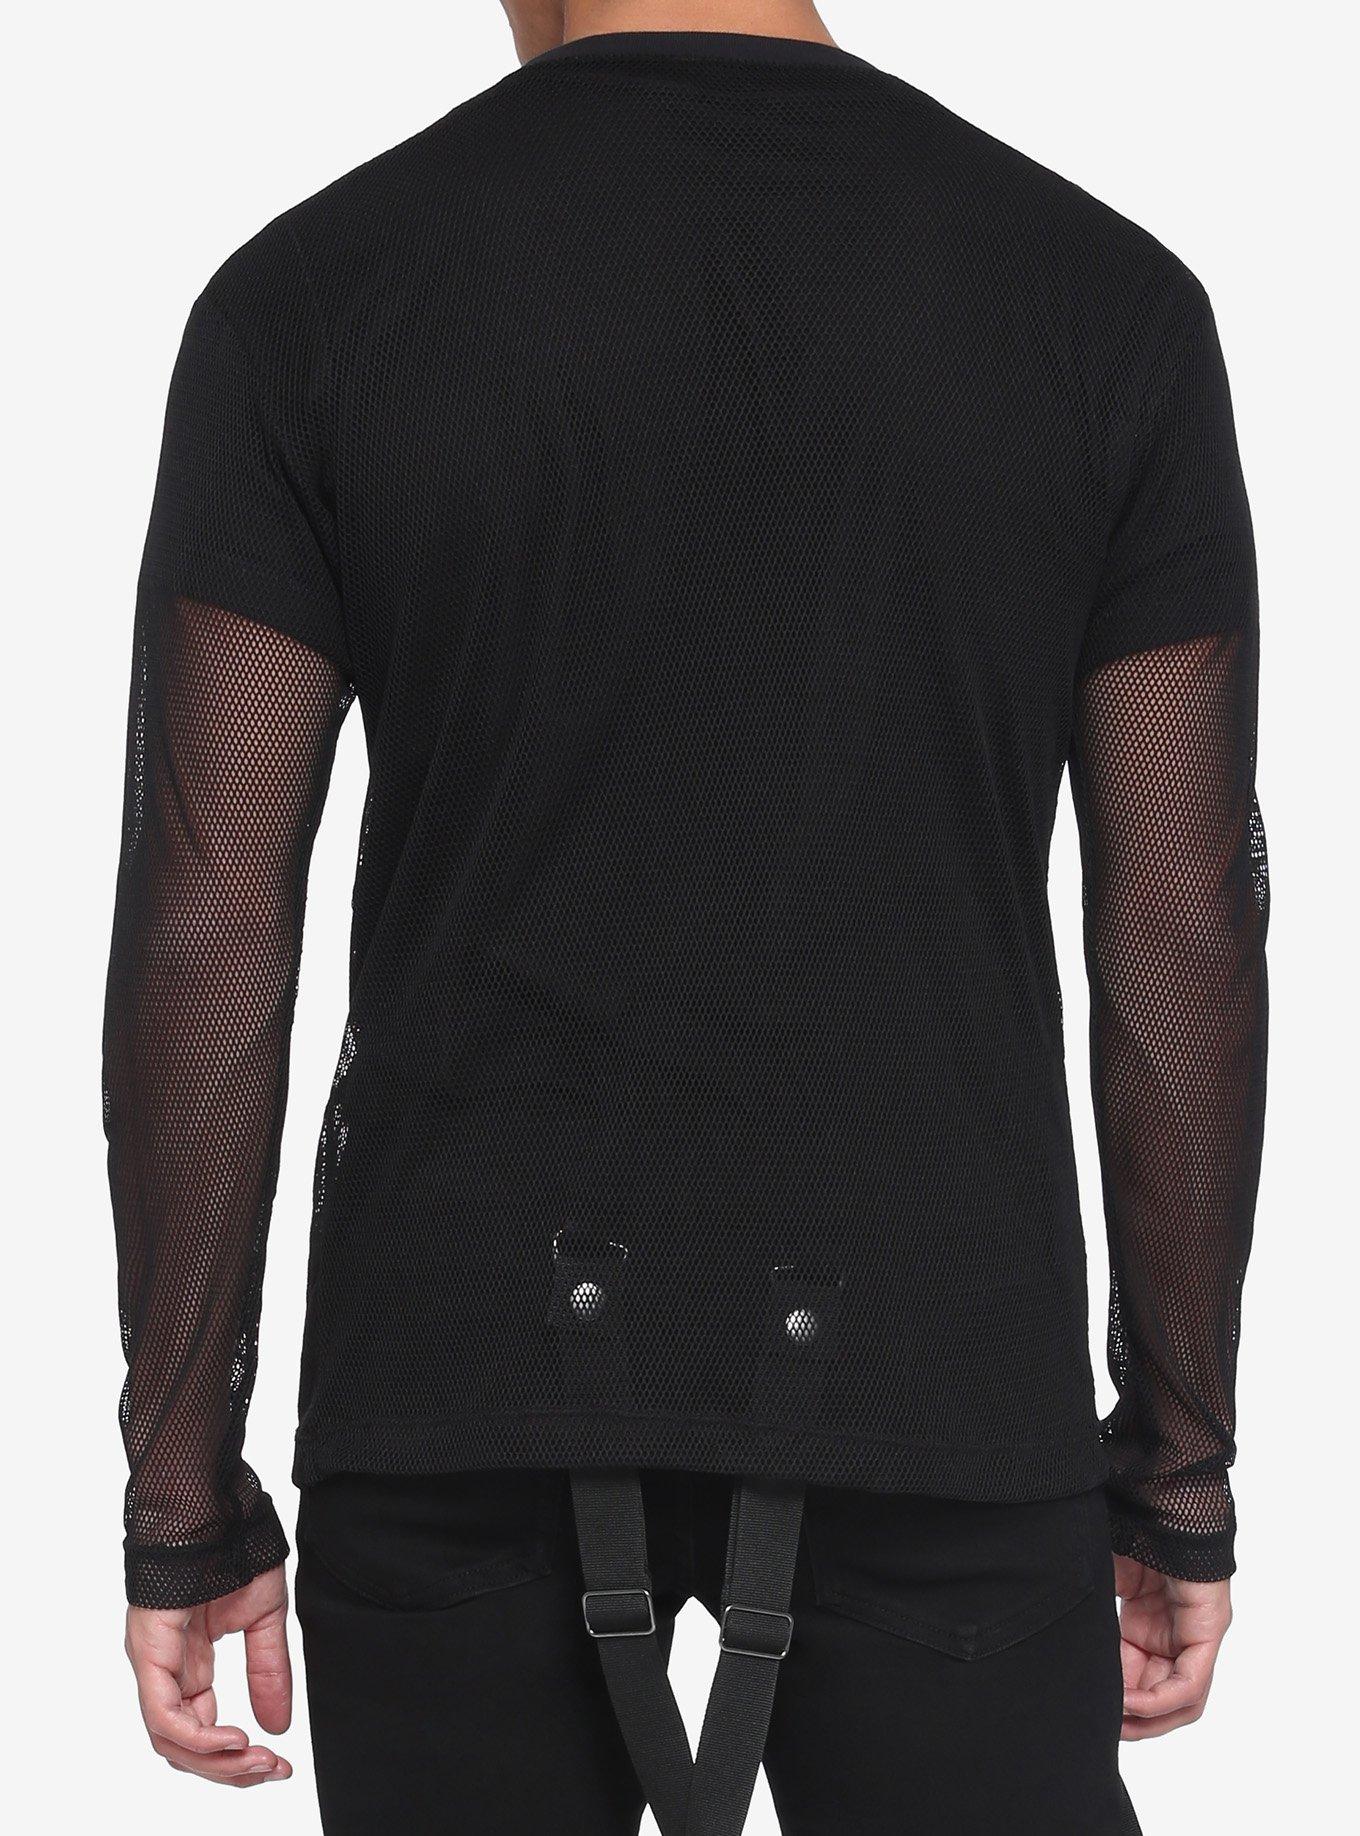 Black Fishnet Long-Sleeve Top, BLACK, alternate